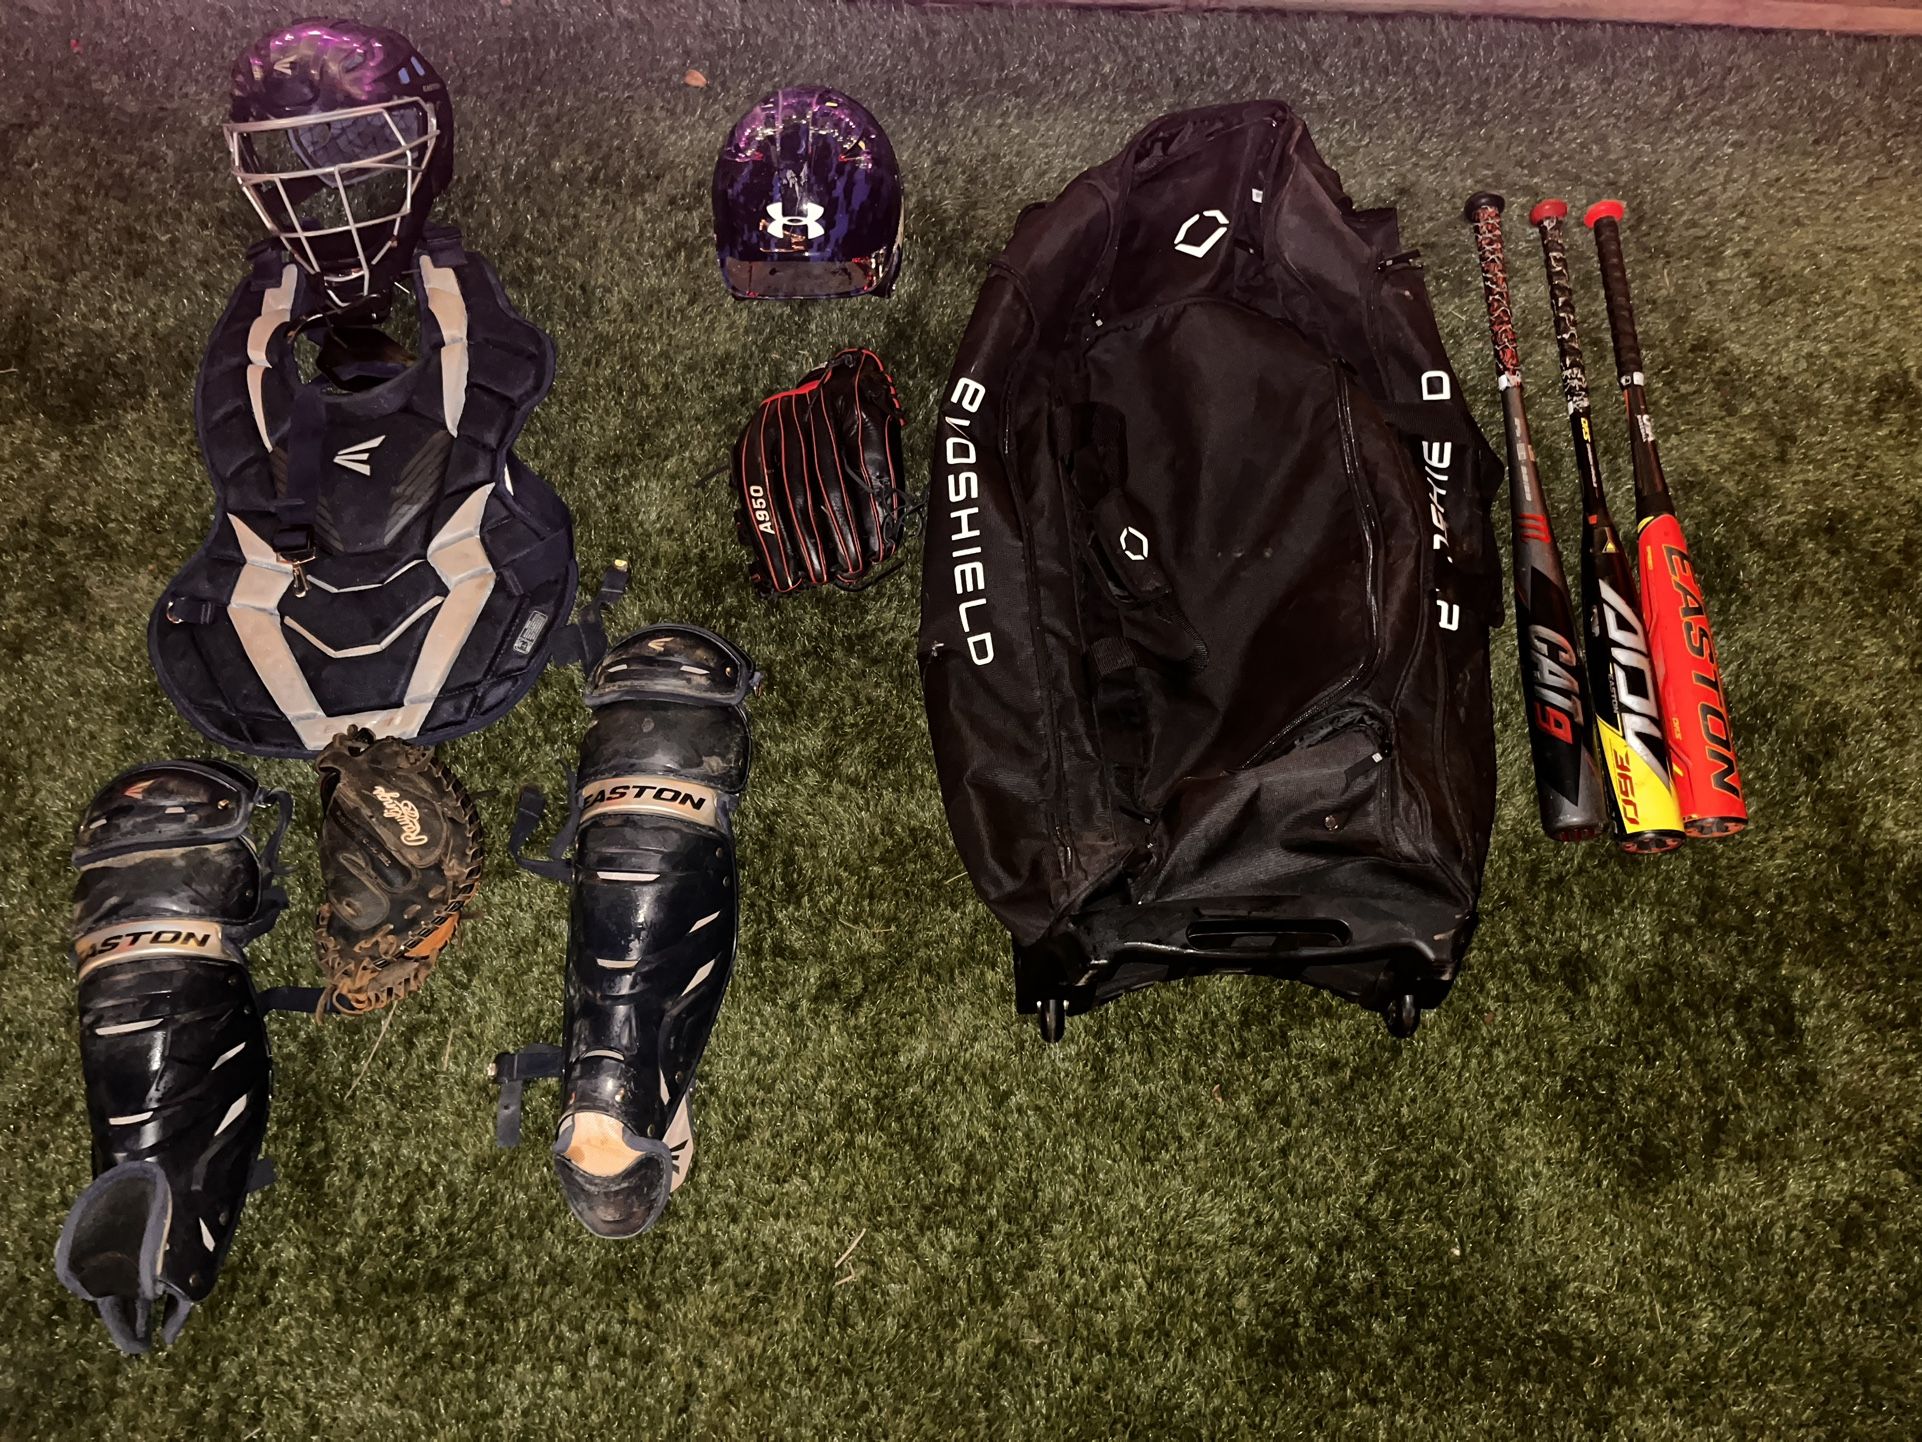 full base ball gear catcher gear and baseball bats